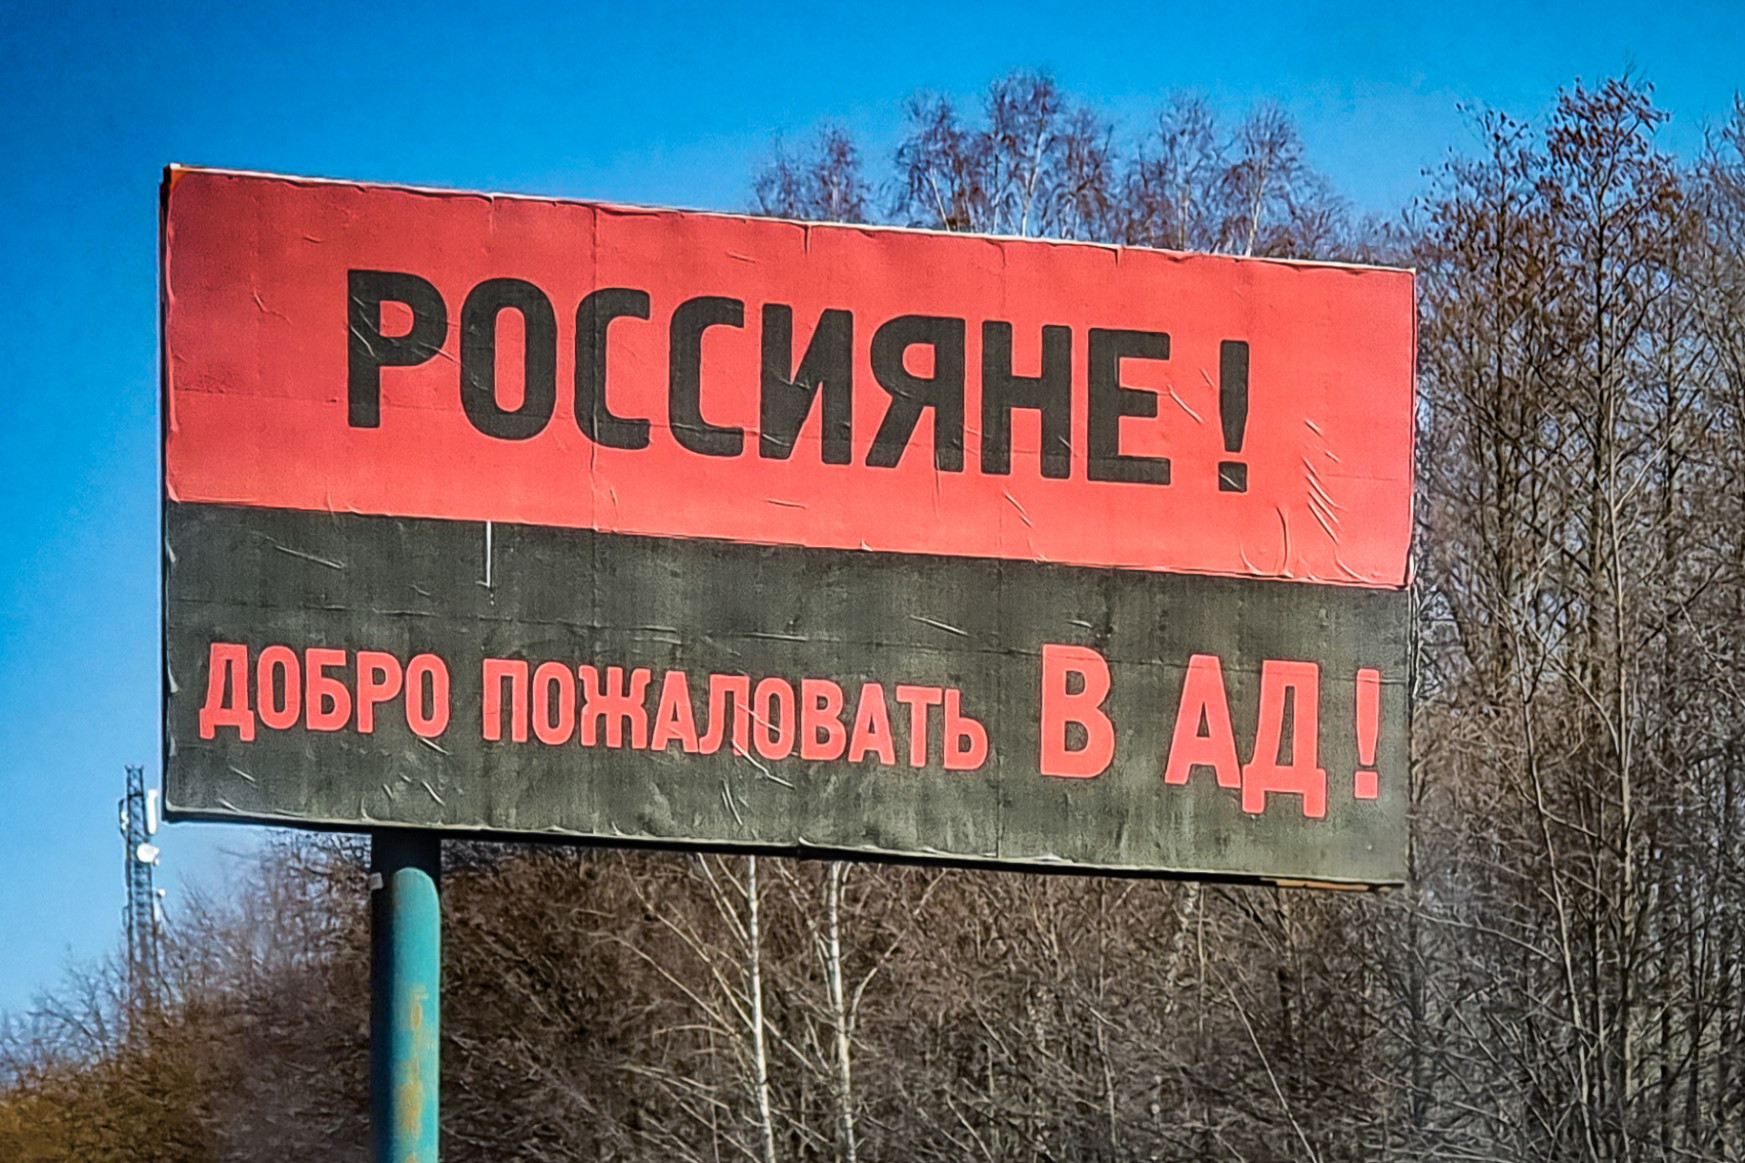 Elmentünk az ukrán atomerőmű városába, aminek határából verték vissza az oroszokat, olyan volt, mintha egy szocialista mintafilmbe csöppentünk volna